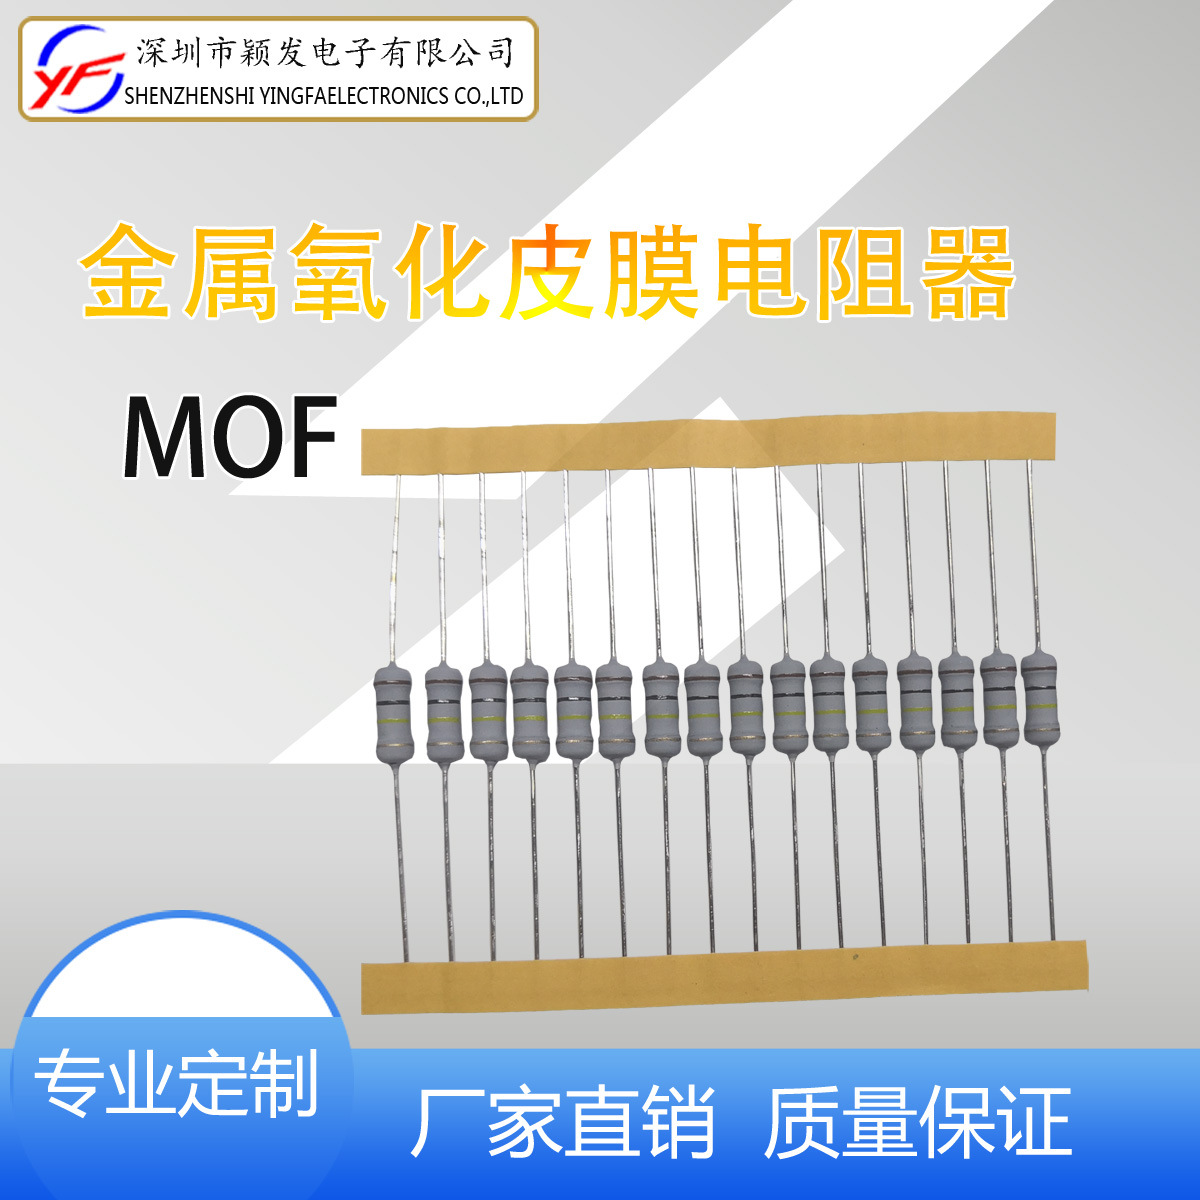 厂家直销 MOF金属氧化膜1W固定电阻器编带氧化皮膜电阻插件电阻器